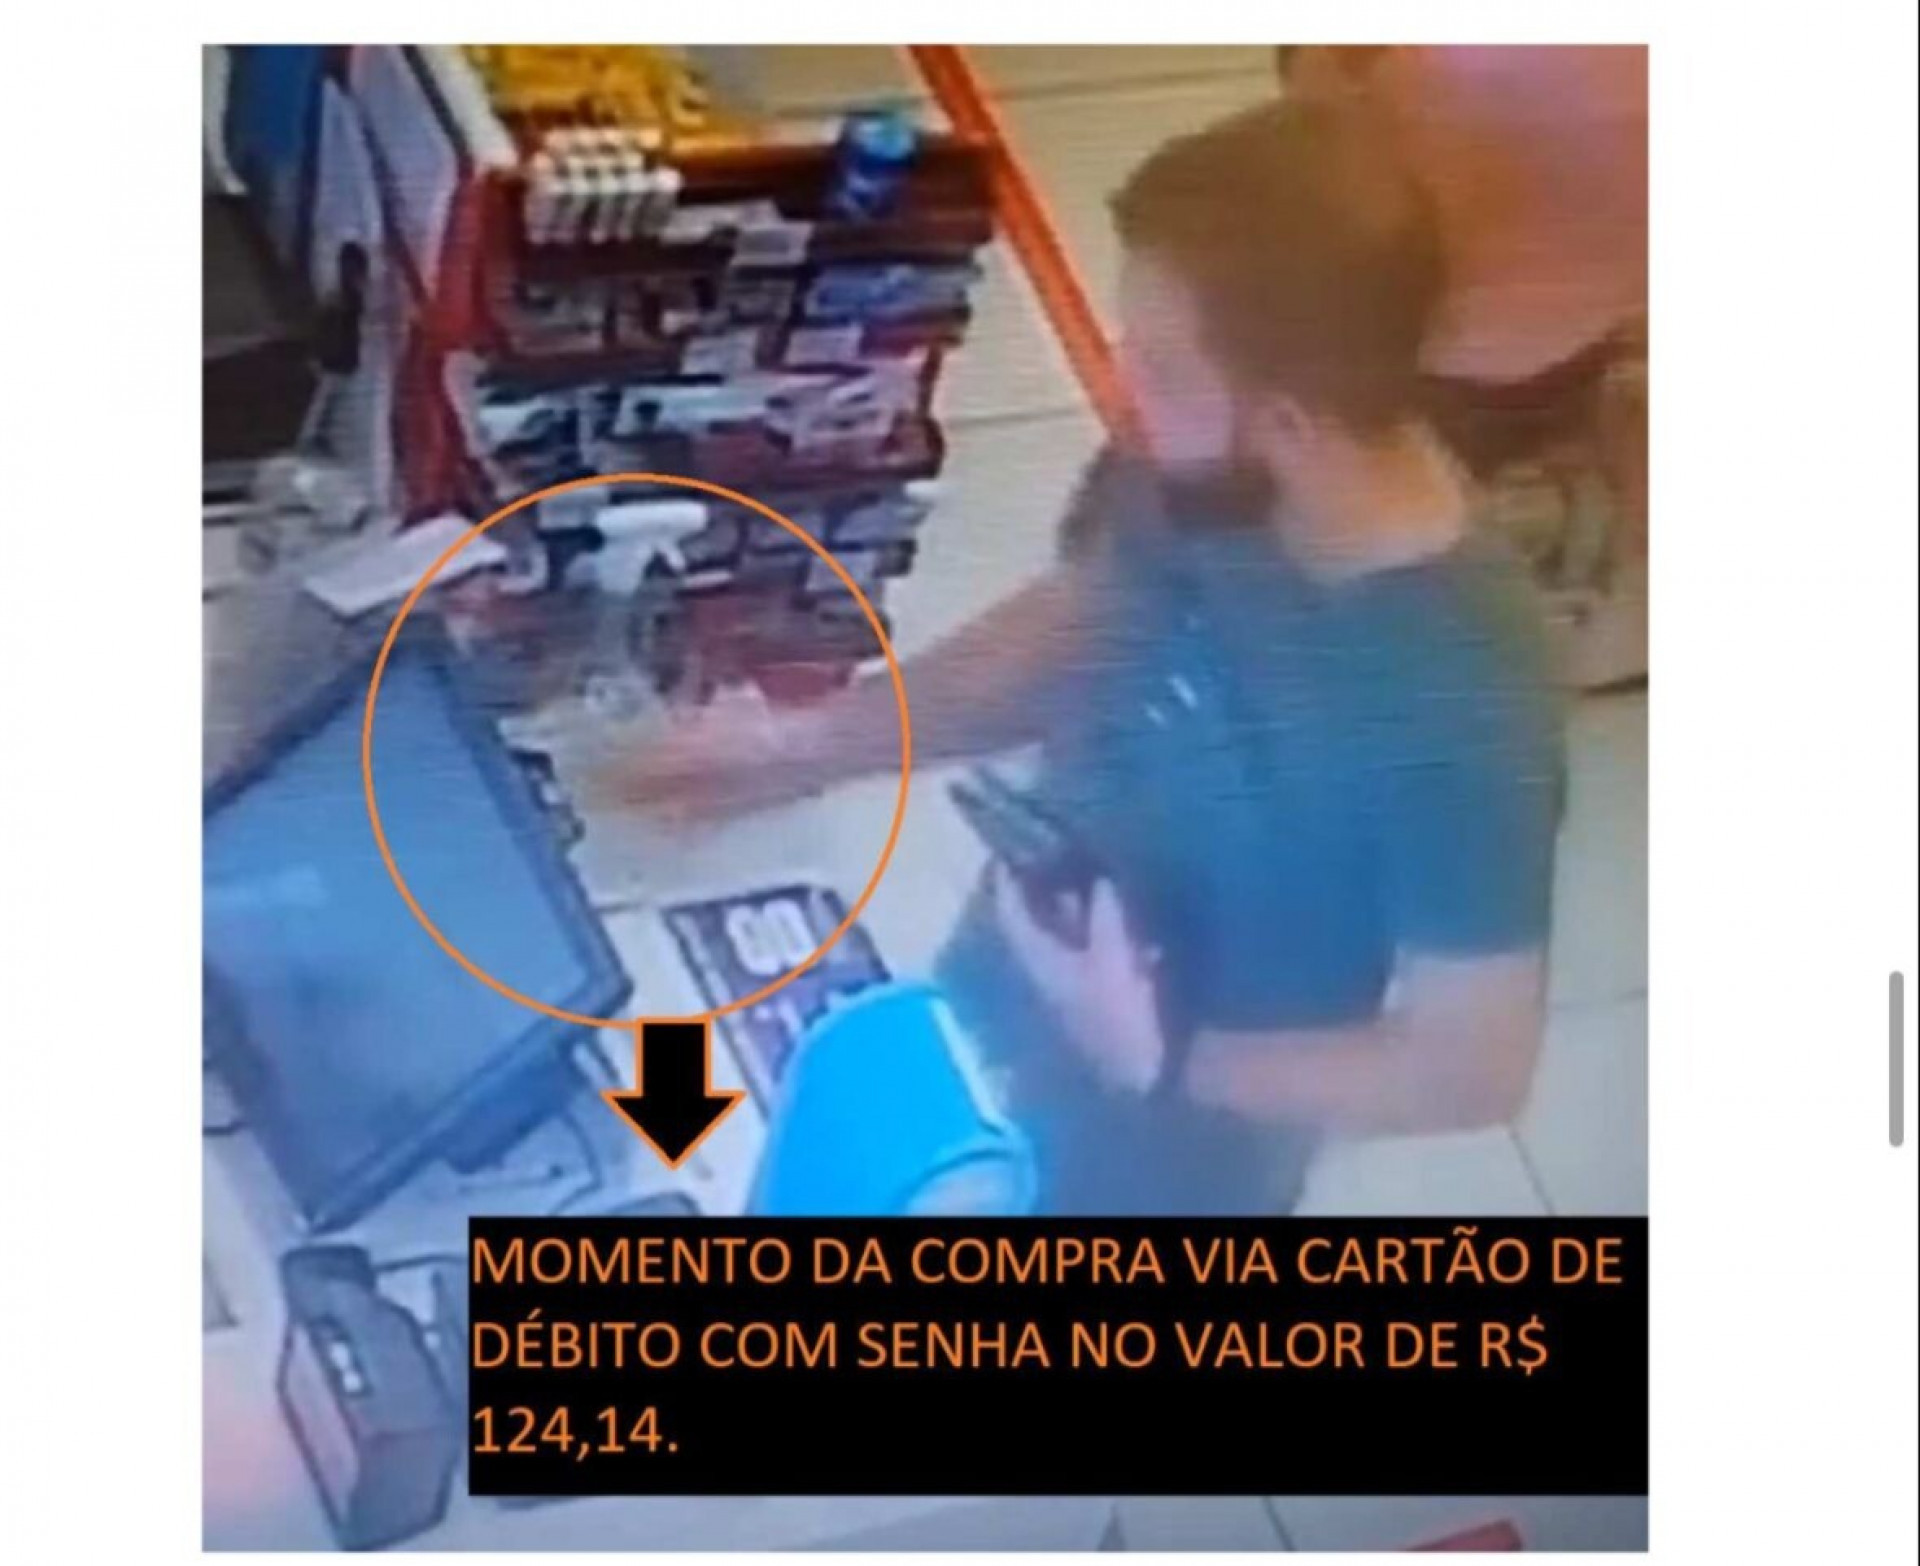  - Divulgação / Polícia Civil de Goiás